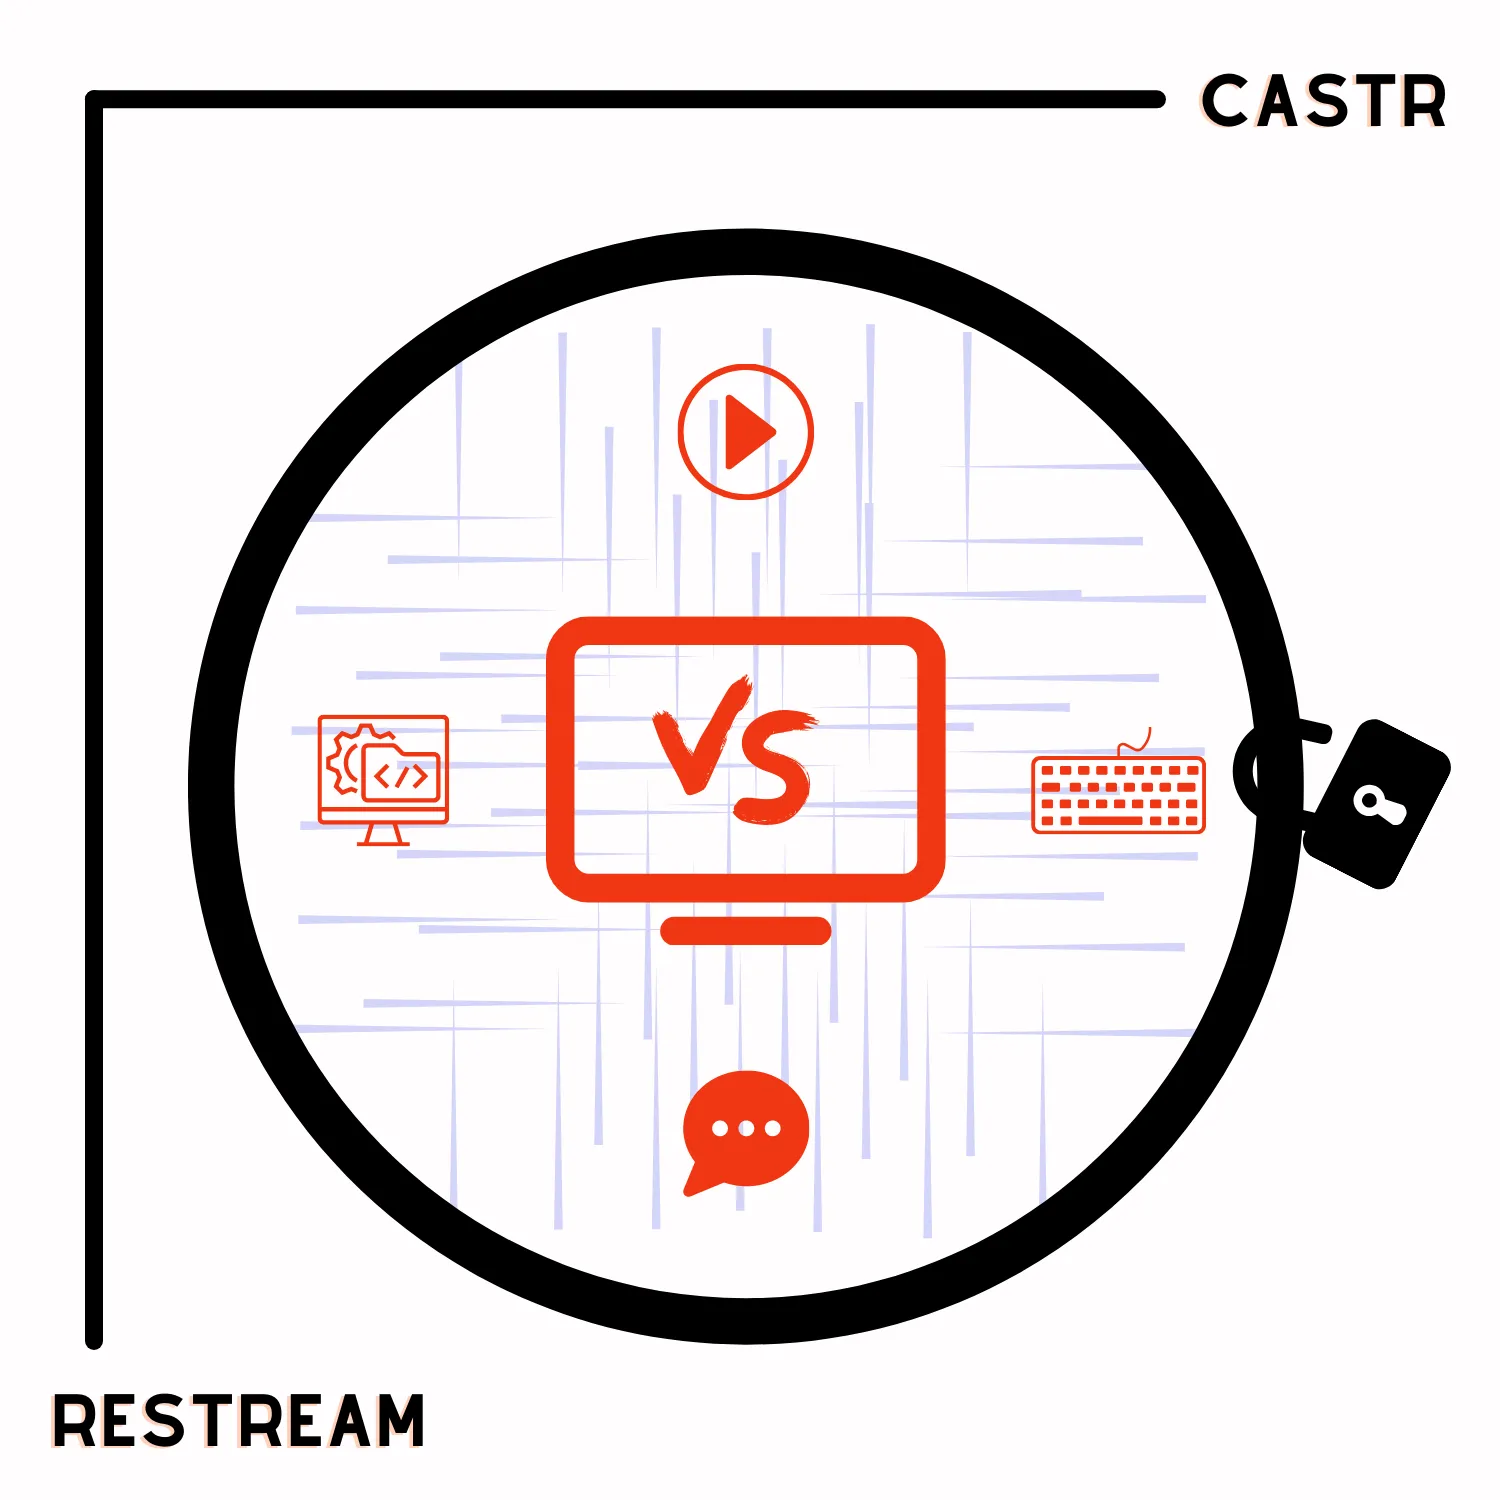 Castr vs. Restream